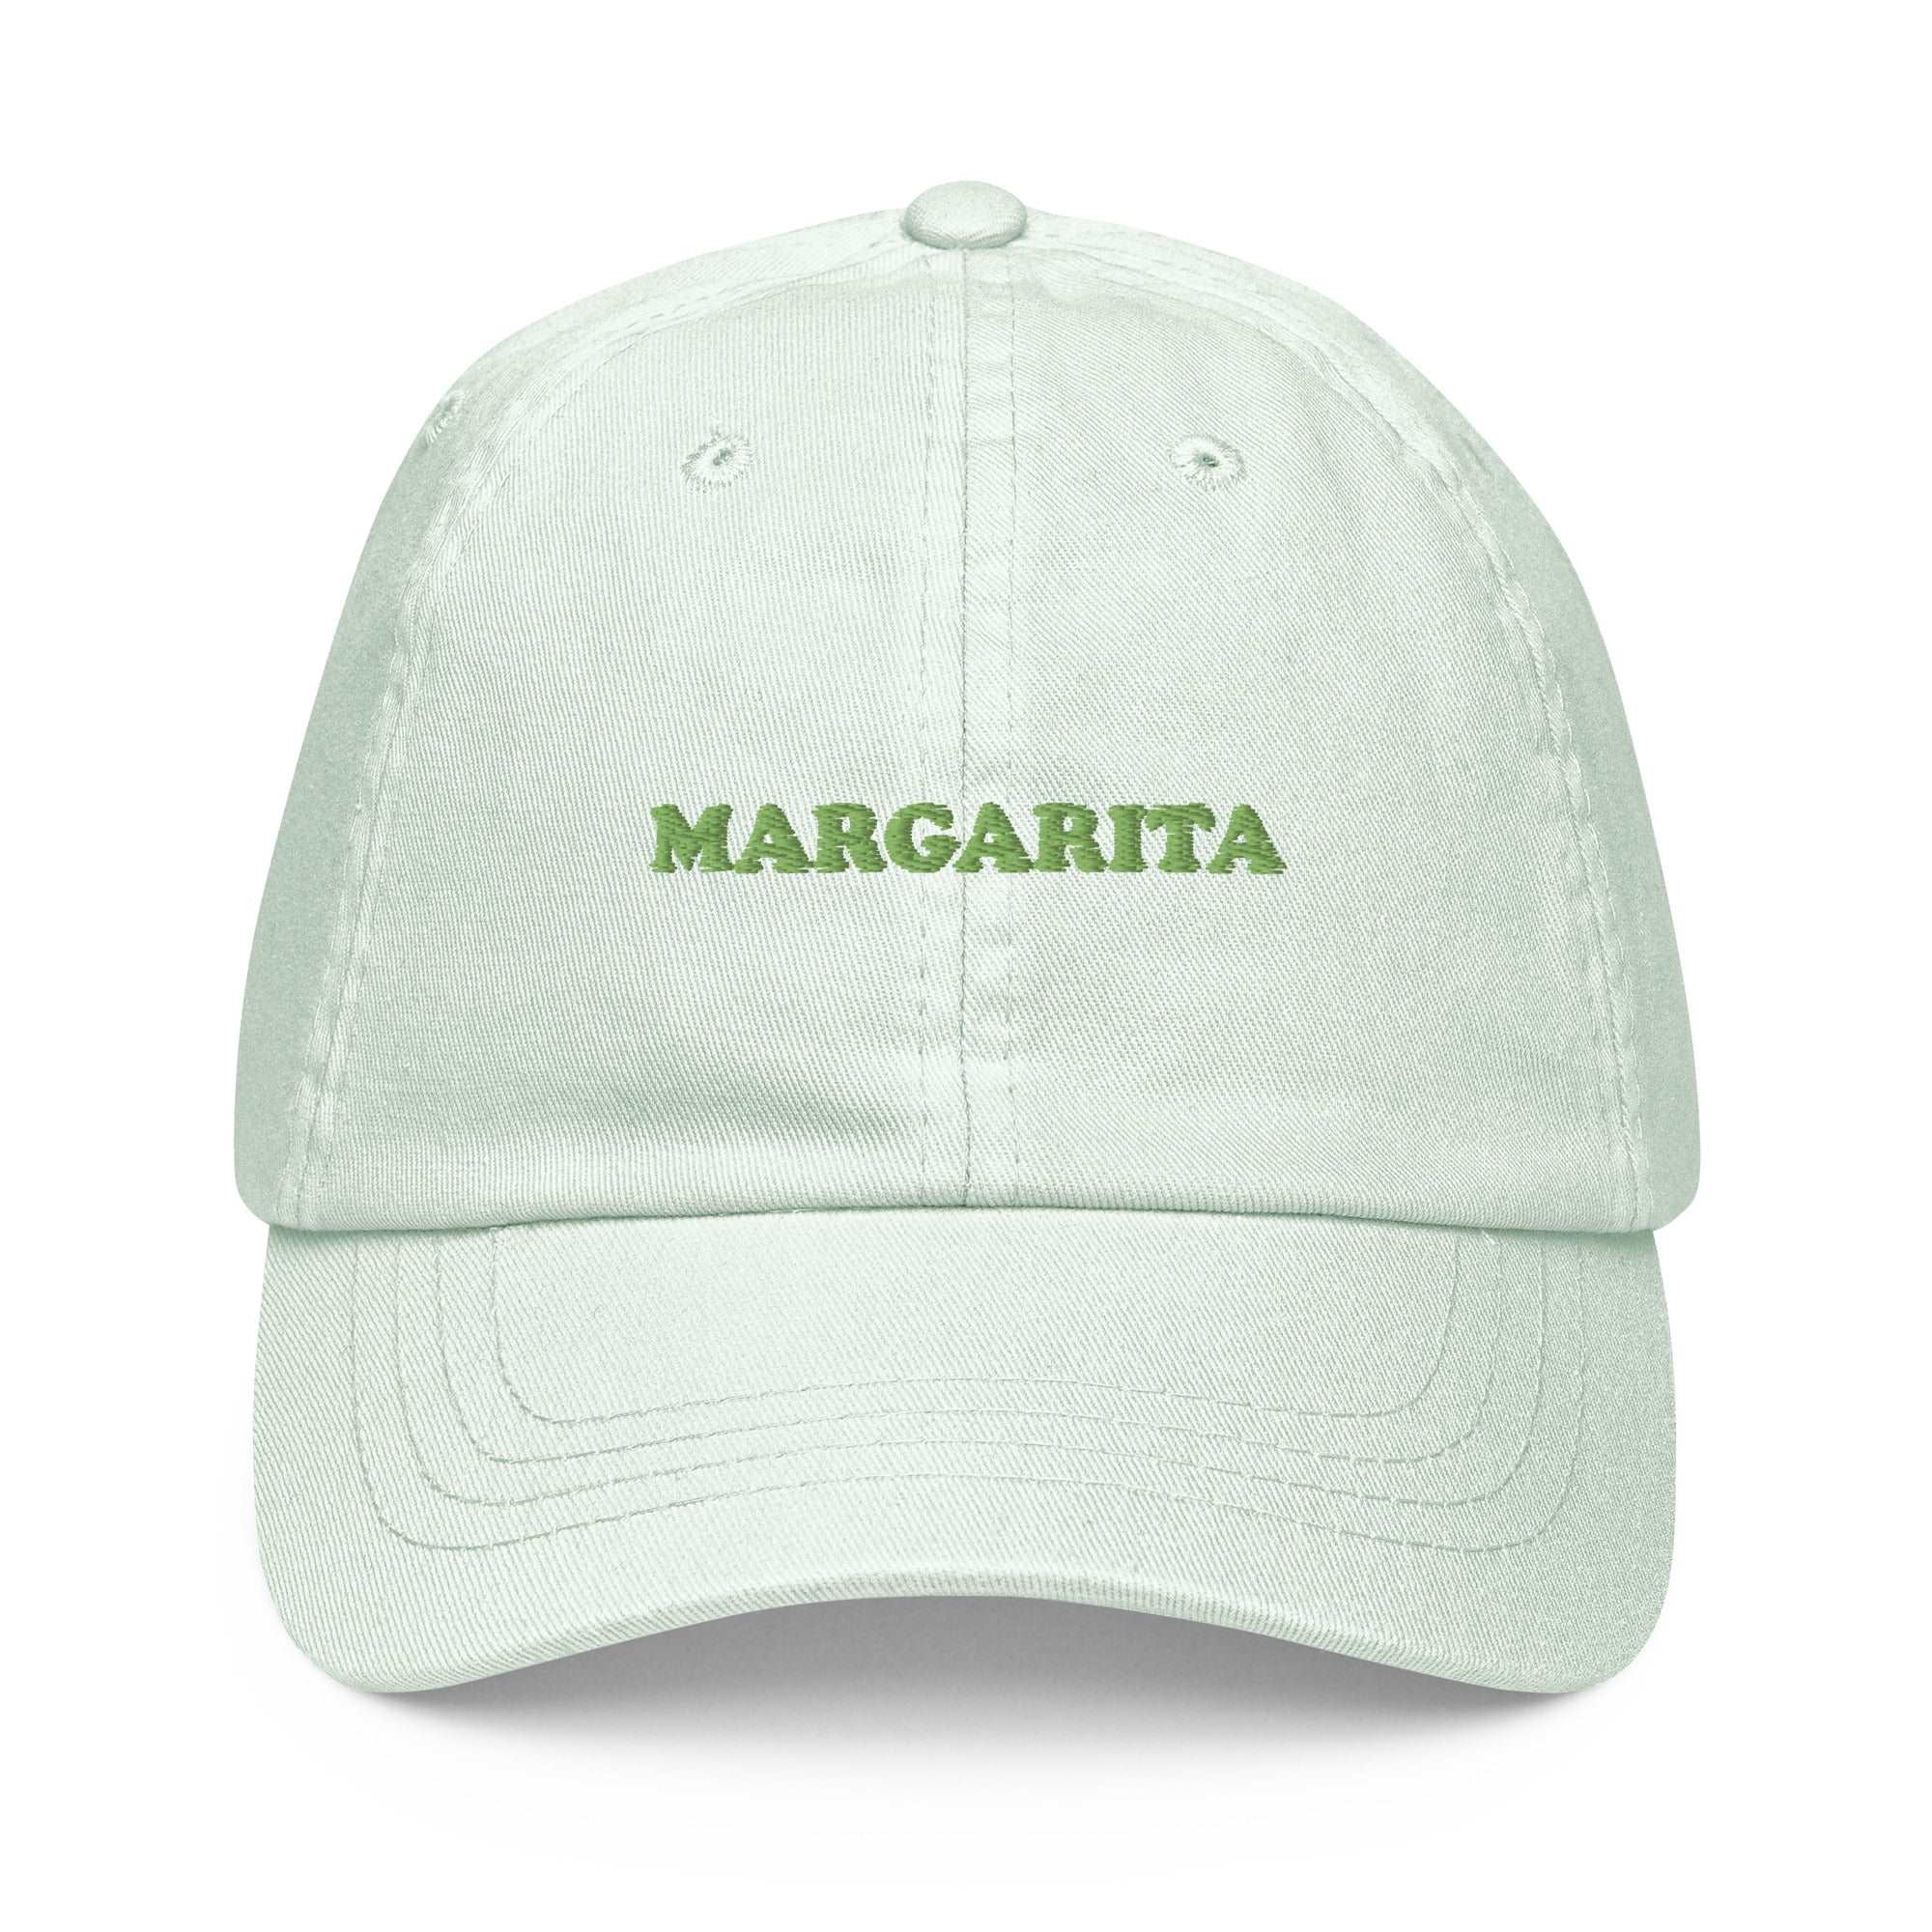 Margarita - Embroidered Pastel Cap